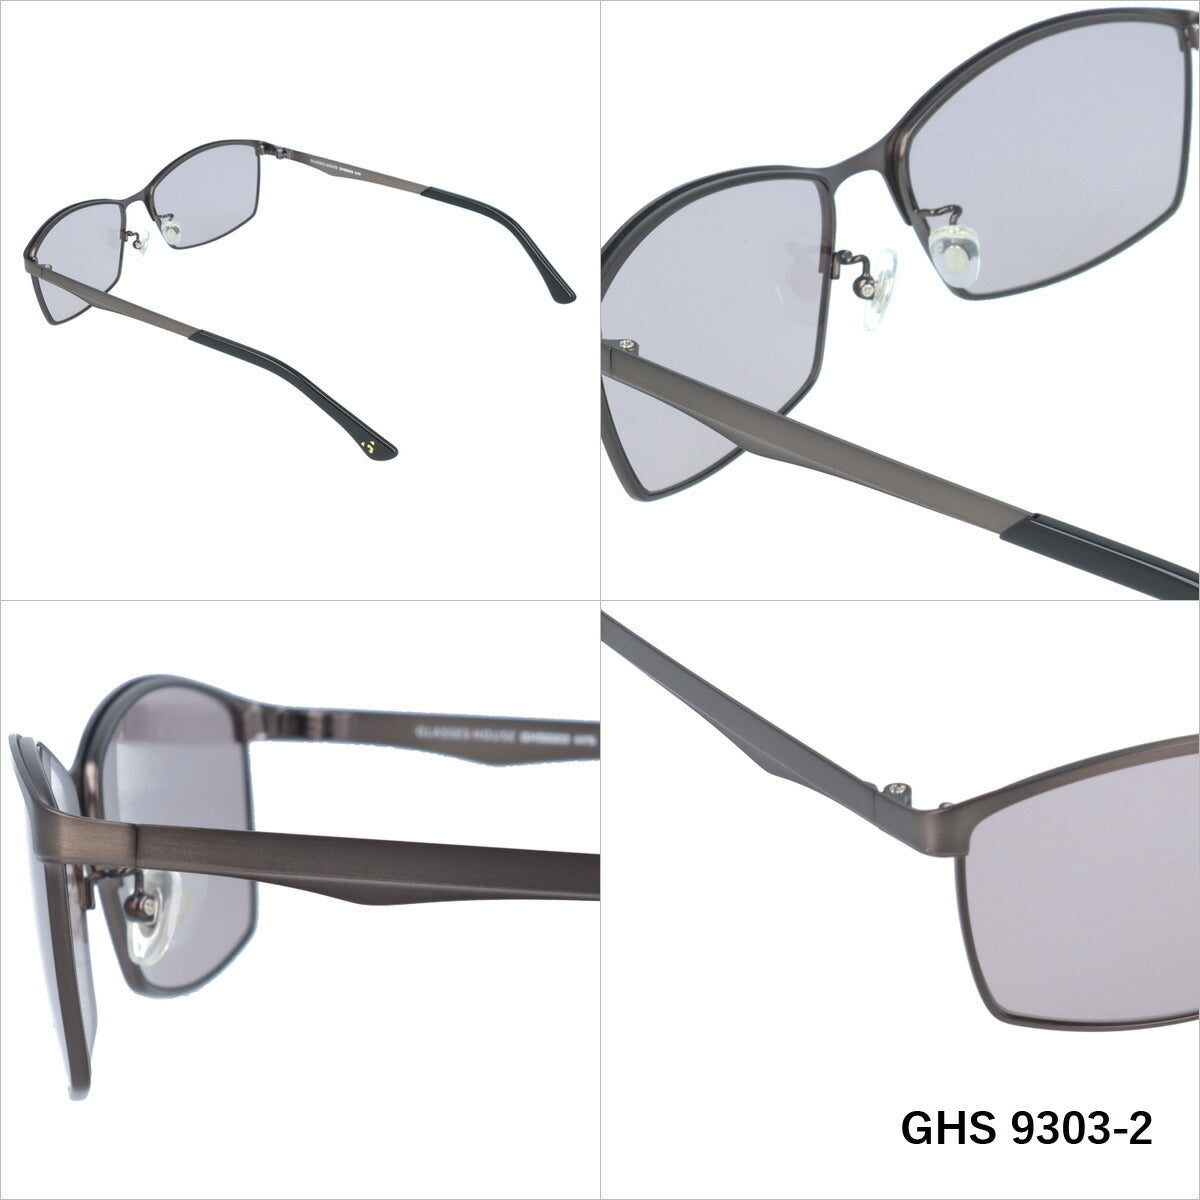 おしゃれ サングラス GLASSES HOUSE グラスハウス GHS 9303 全3色 58サイズ アジアンフィット スクエア型 メンズ レディース UVカット 紫外線 対策 ブランド 眼鏡 メガネ アイウェア 人気 おすすめ ラッピング無料